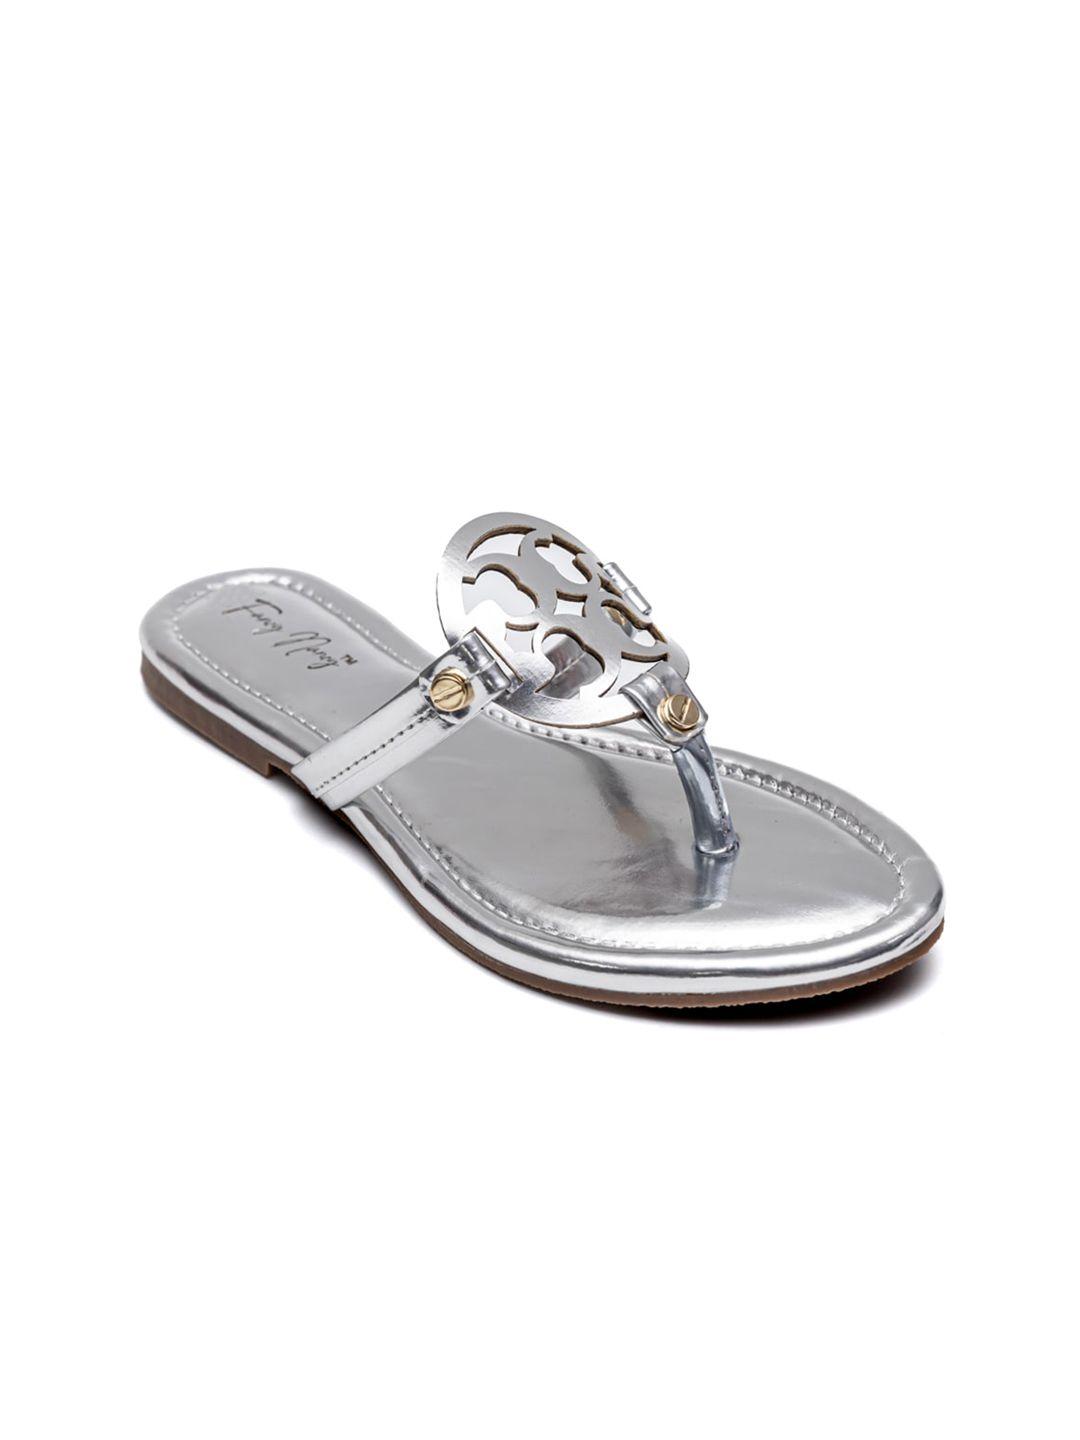 dapper feet-fancy nancy women silver-toned embellished t-strap flats